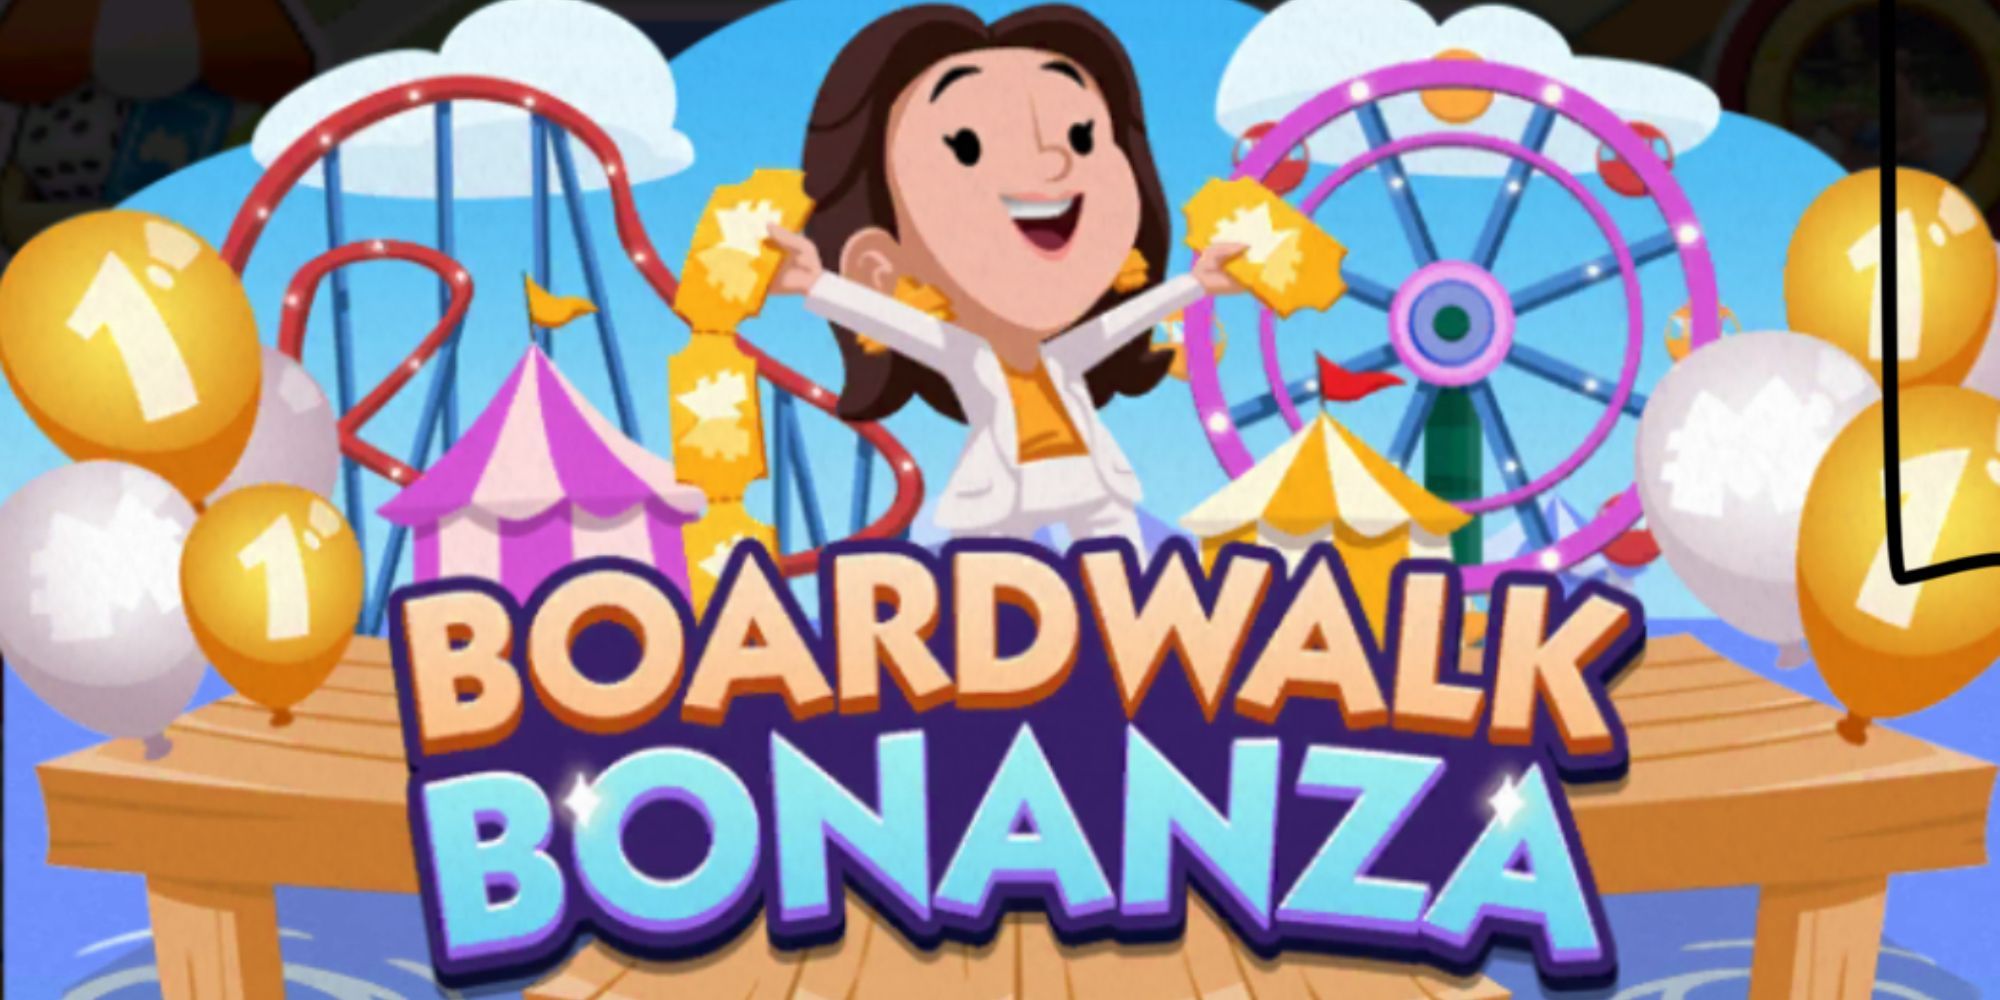 Ms. Monopoly featured in Boardwalk Bonanza in Monopoly Go.